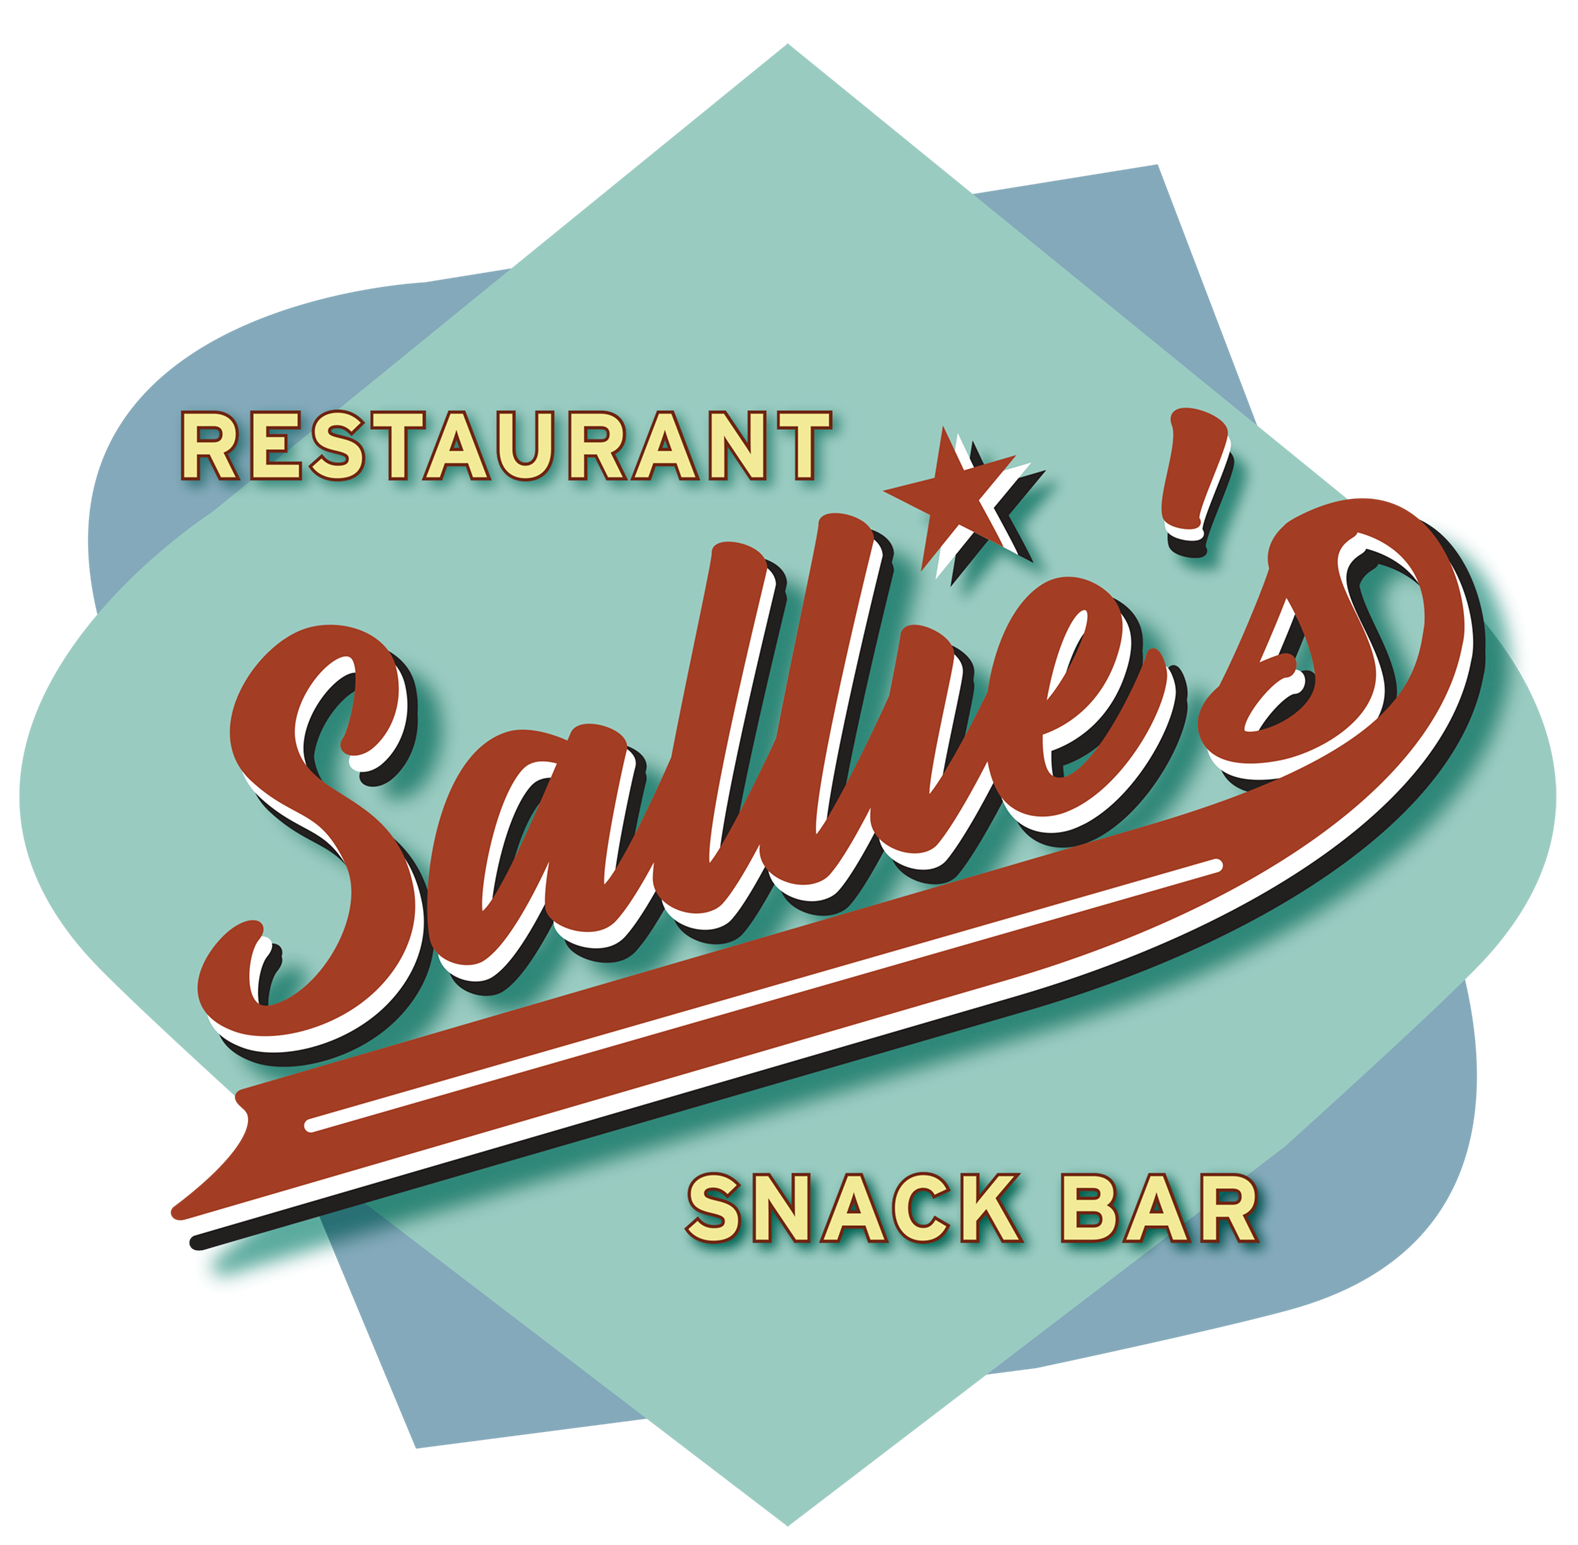 Restaurant Sallies